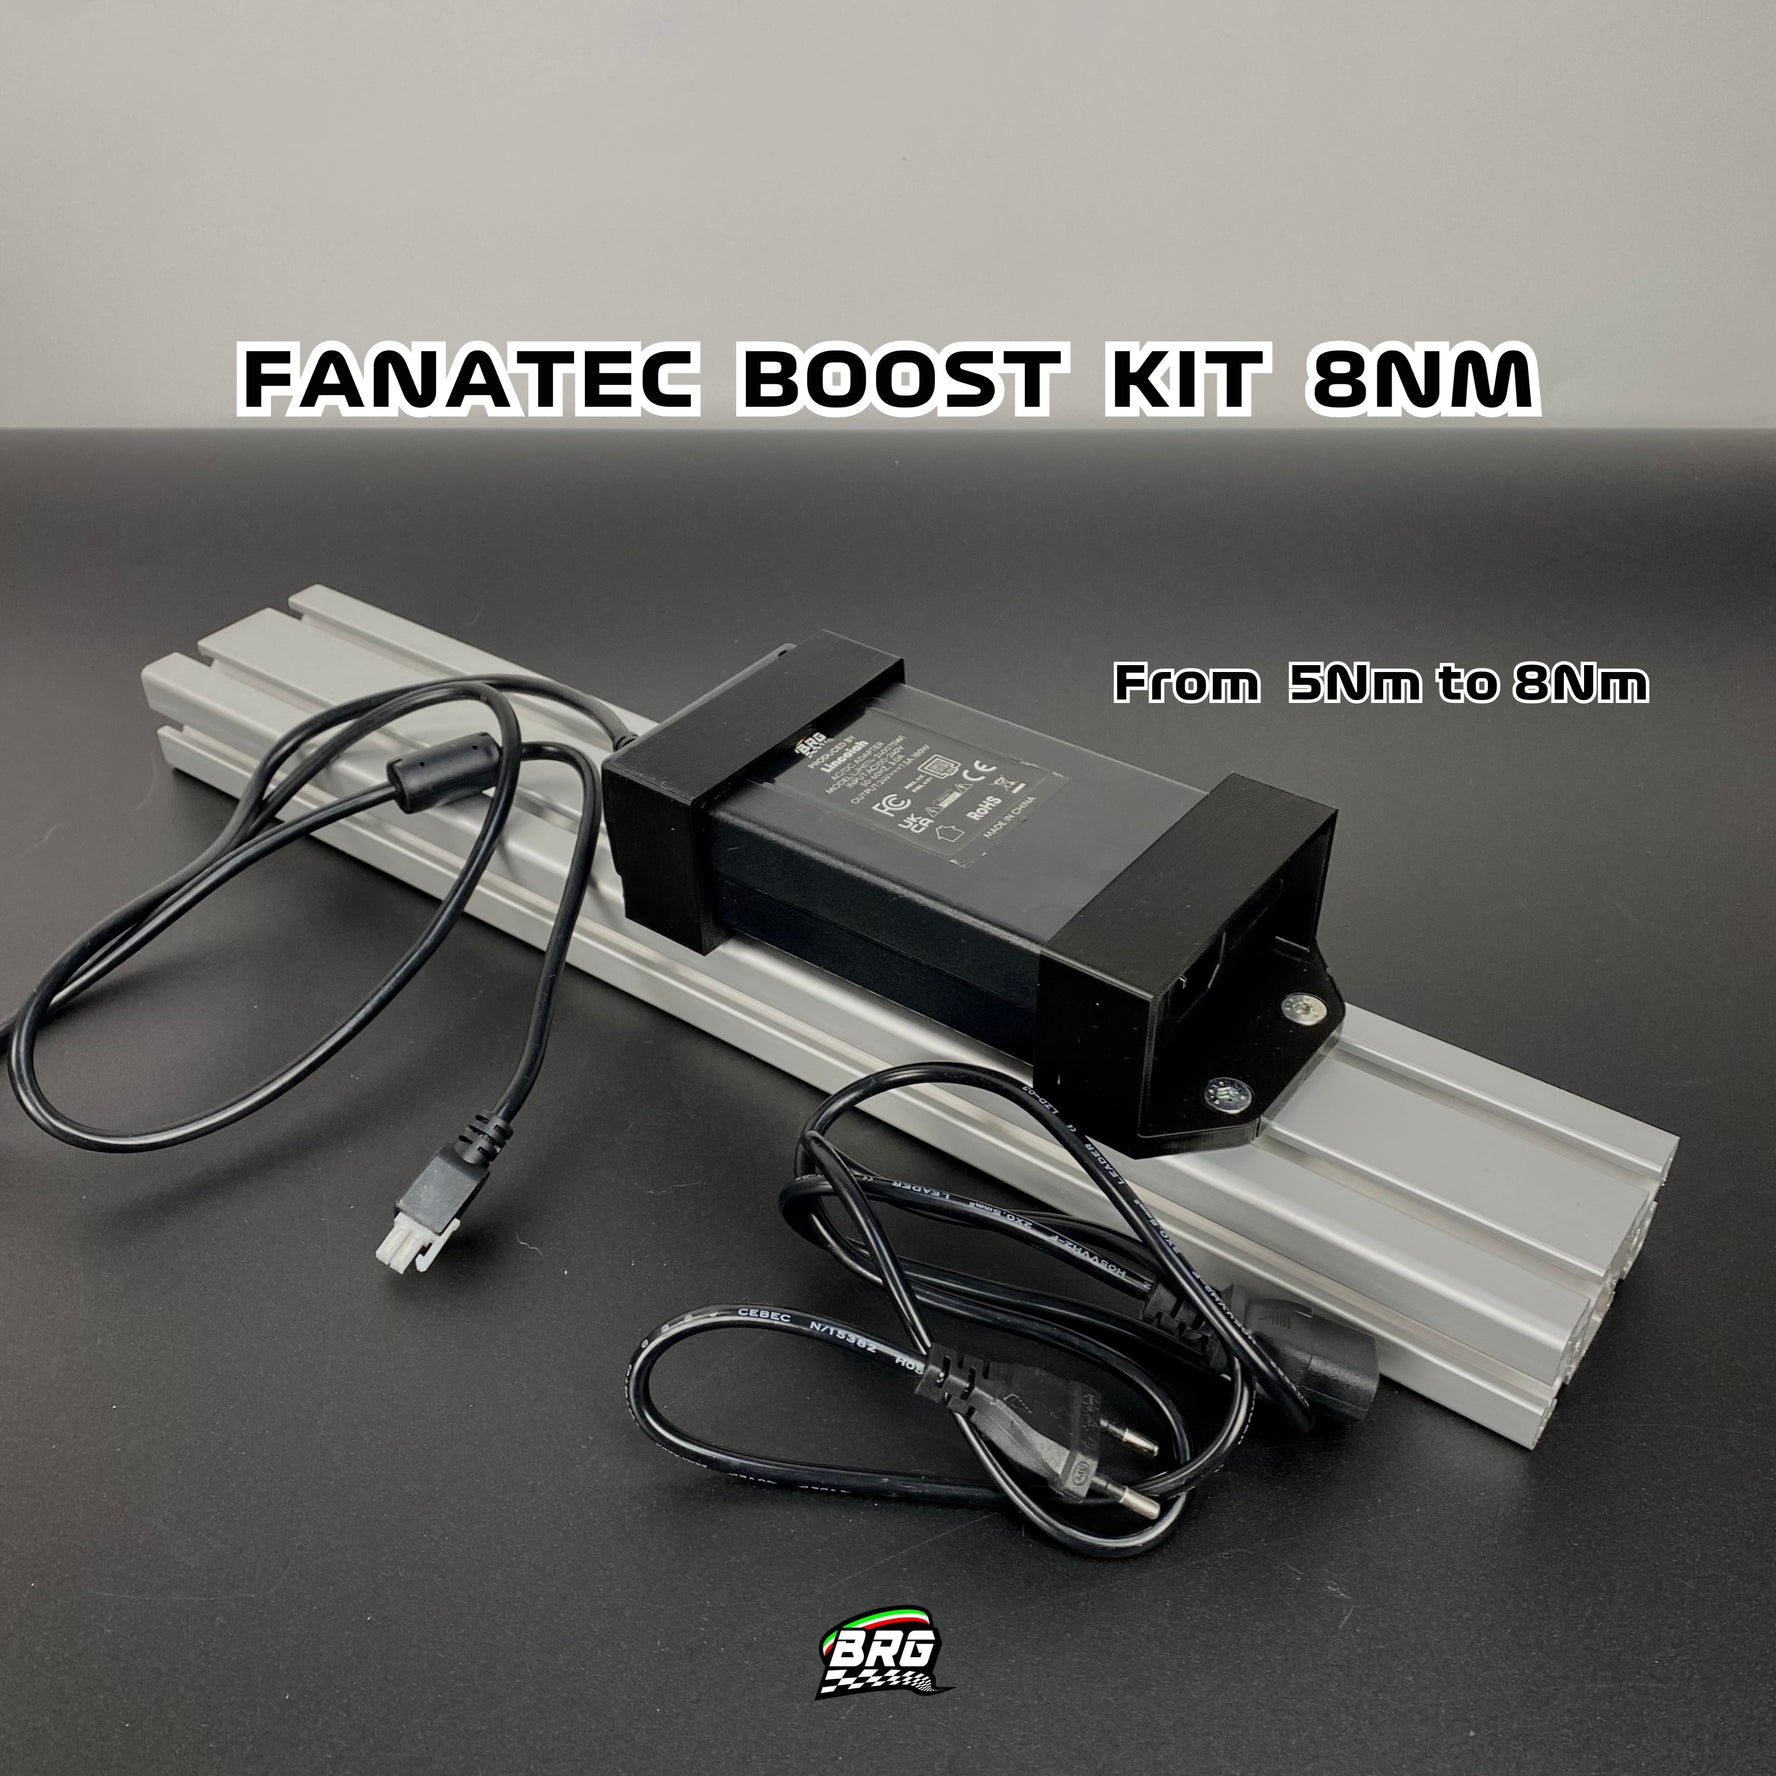 Fanatec Boost Kit 8Nm, for Fanatec CSL DD and Gran Turismo DD Pro